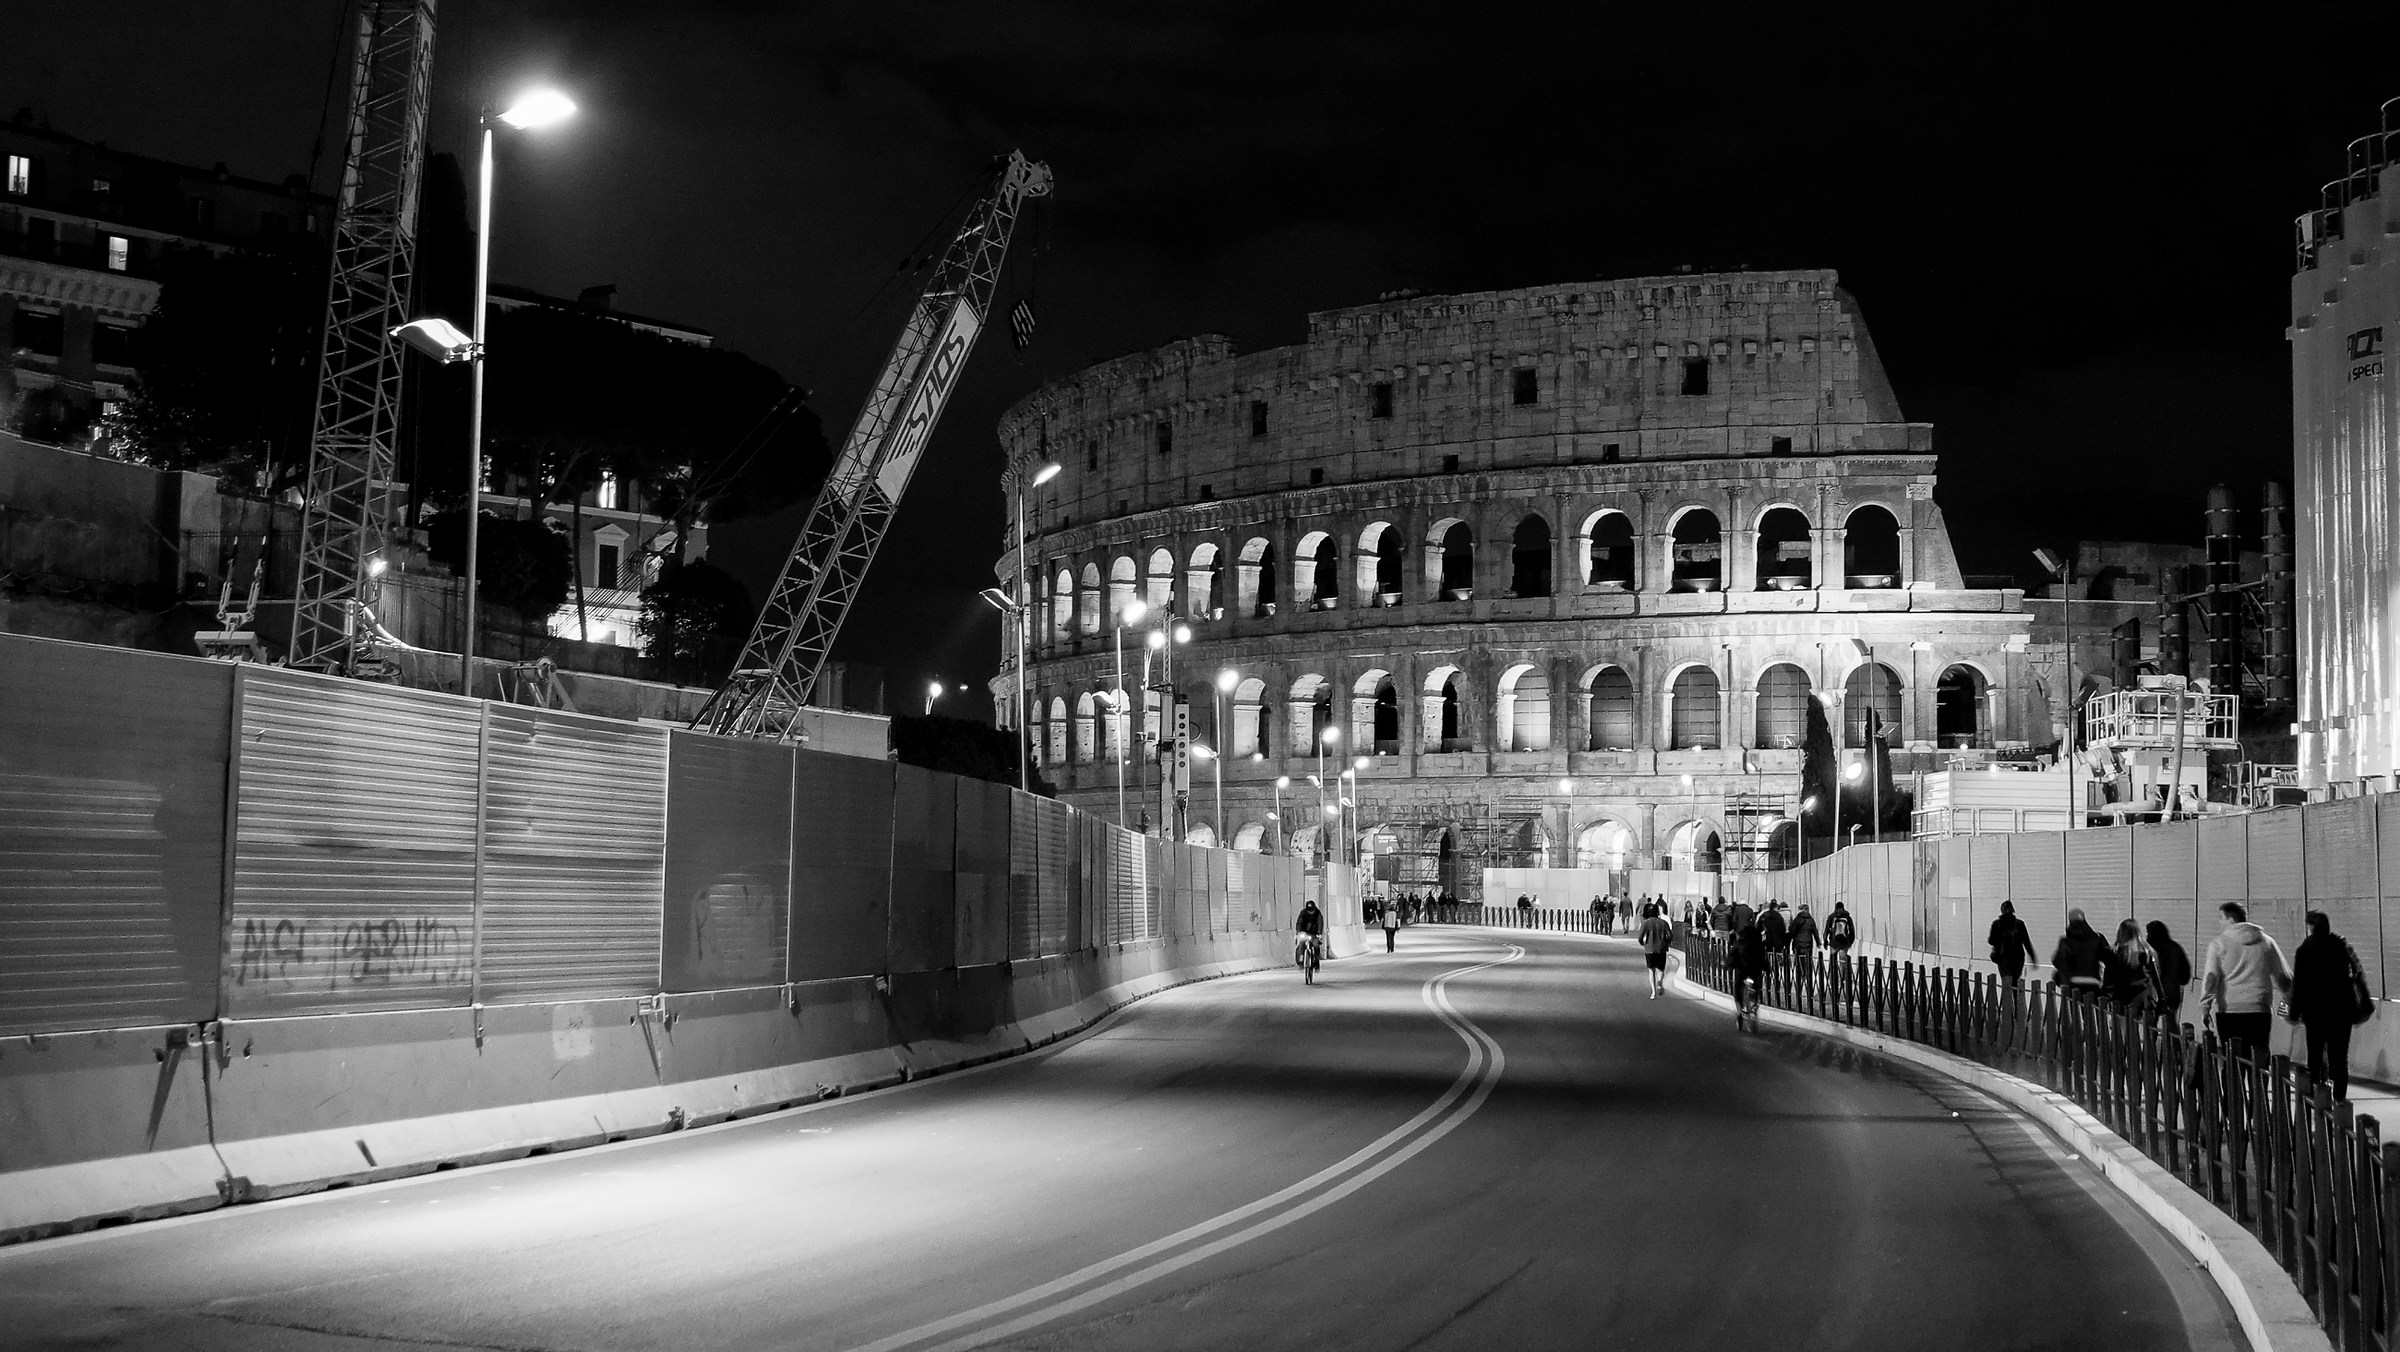 Colosseum under construction...